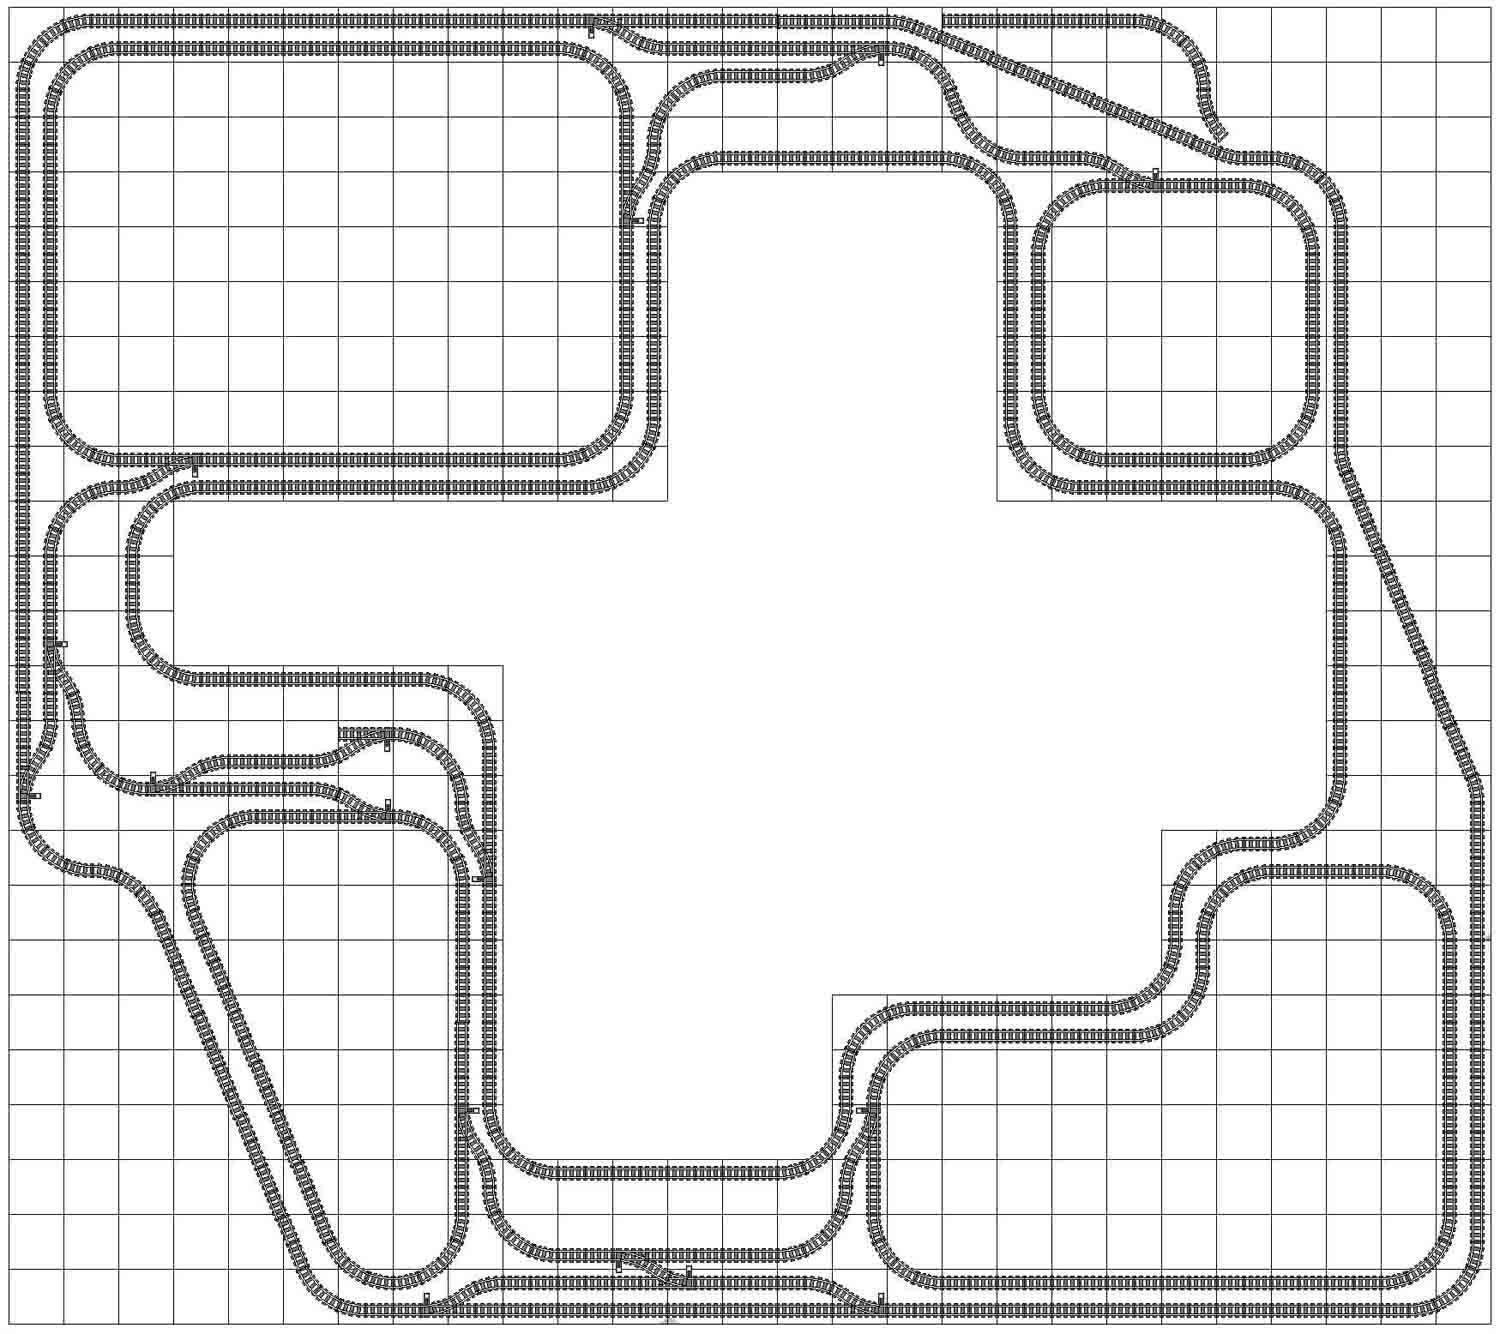 lego train layout ideas